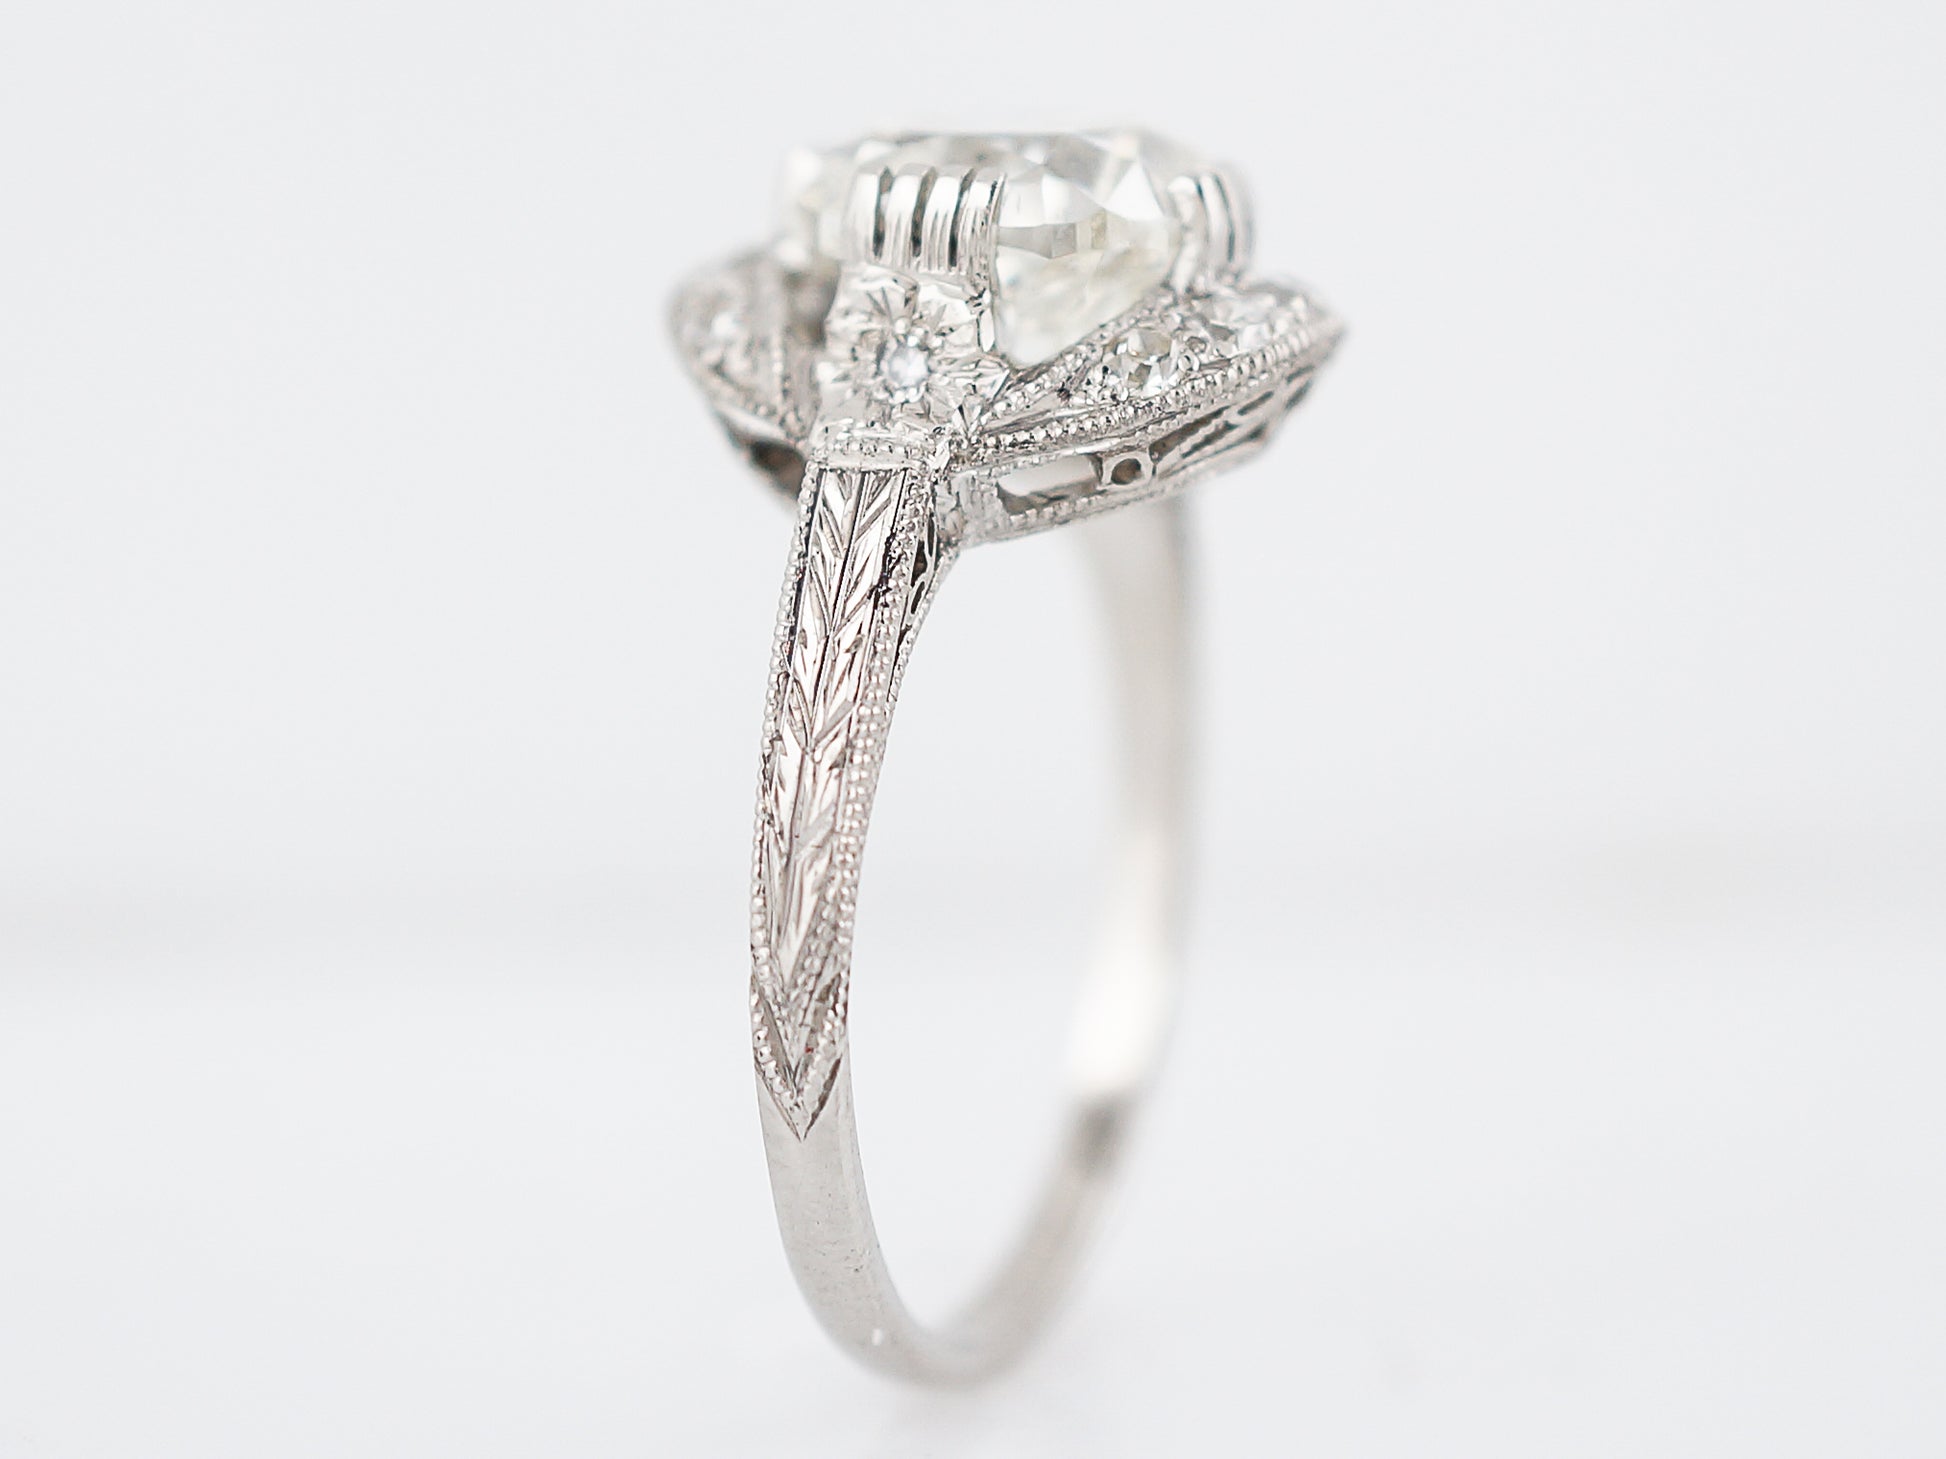 Antique Engagement Ring Art Deco 2.83 Cushion Cut Diamond in Platinum